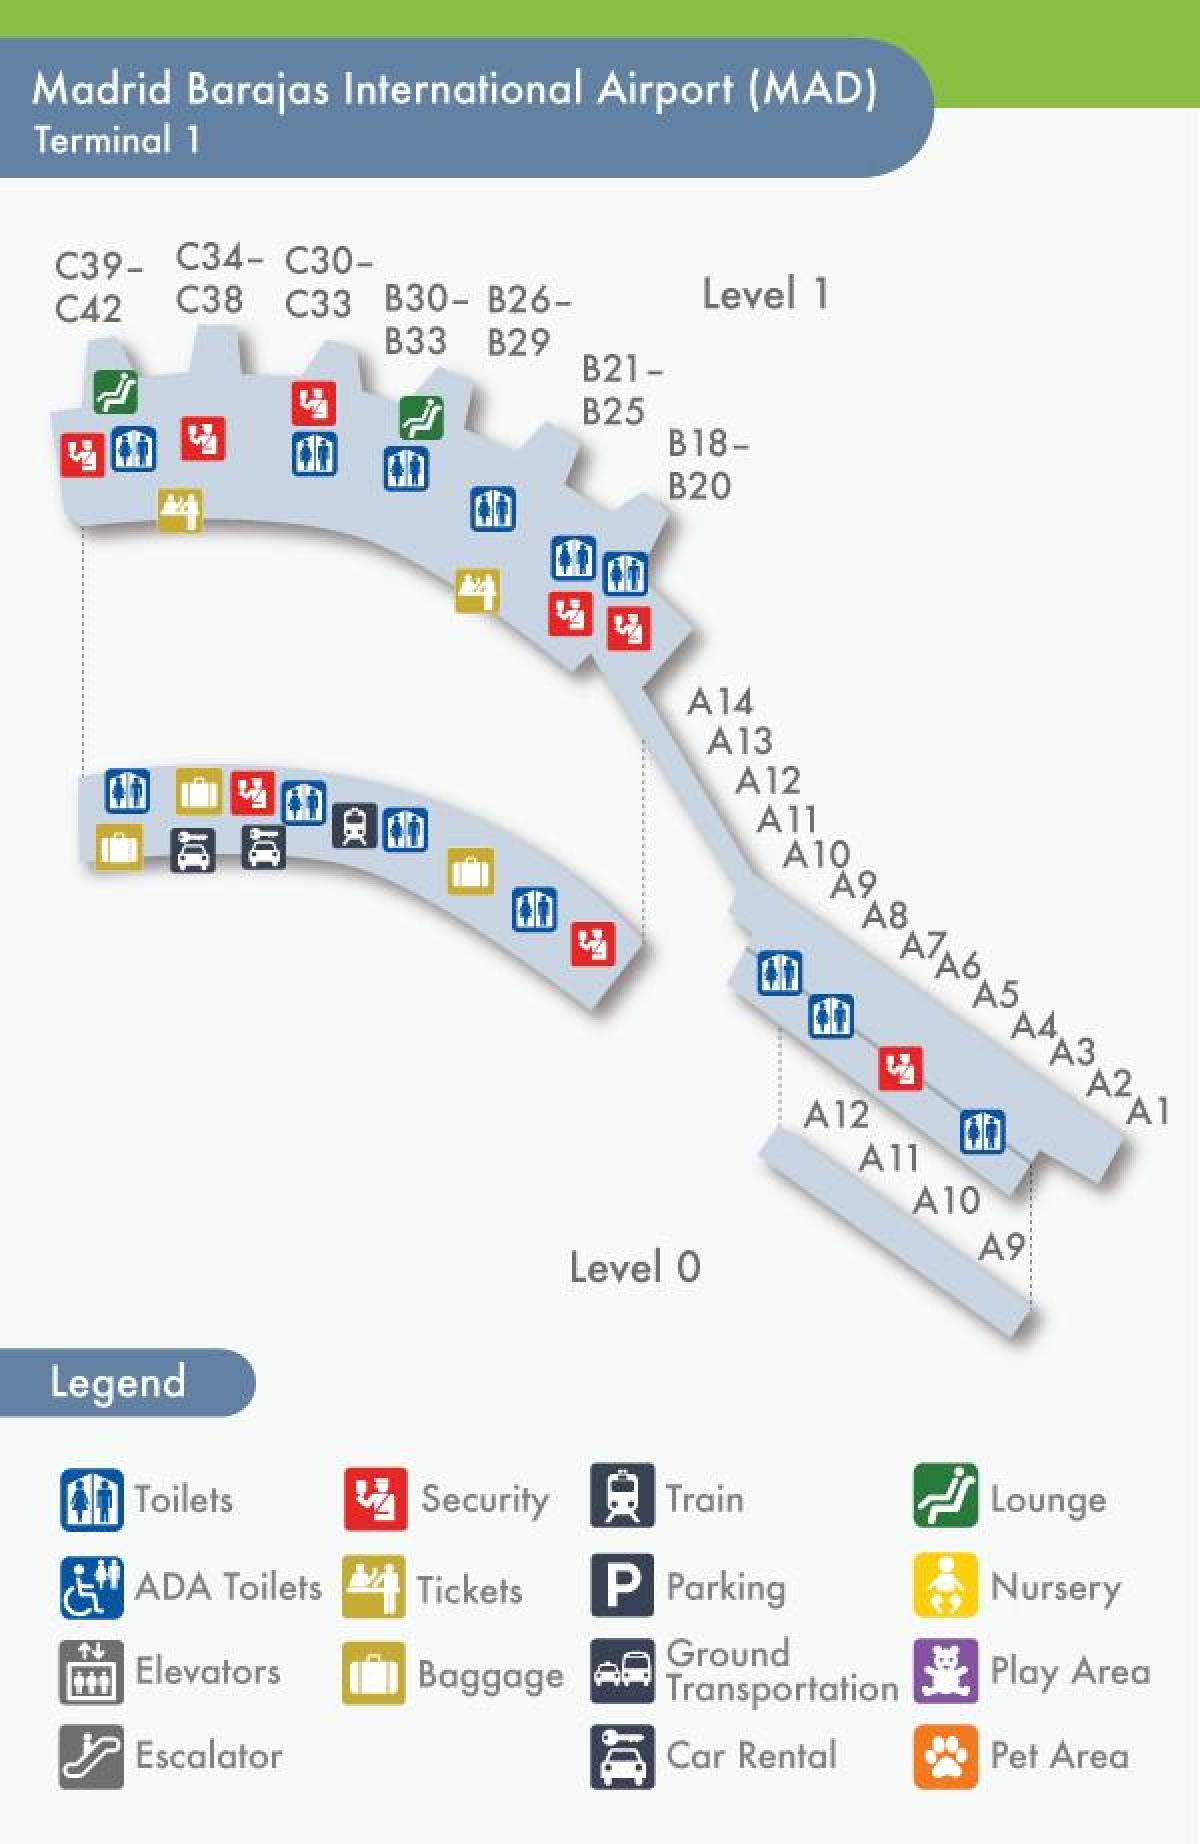 Madrides barajas termināla kartē